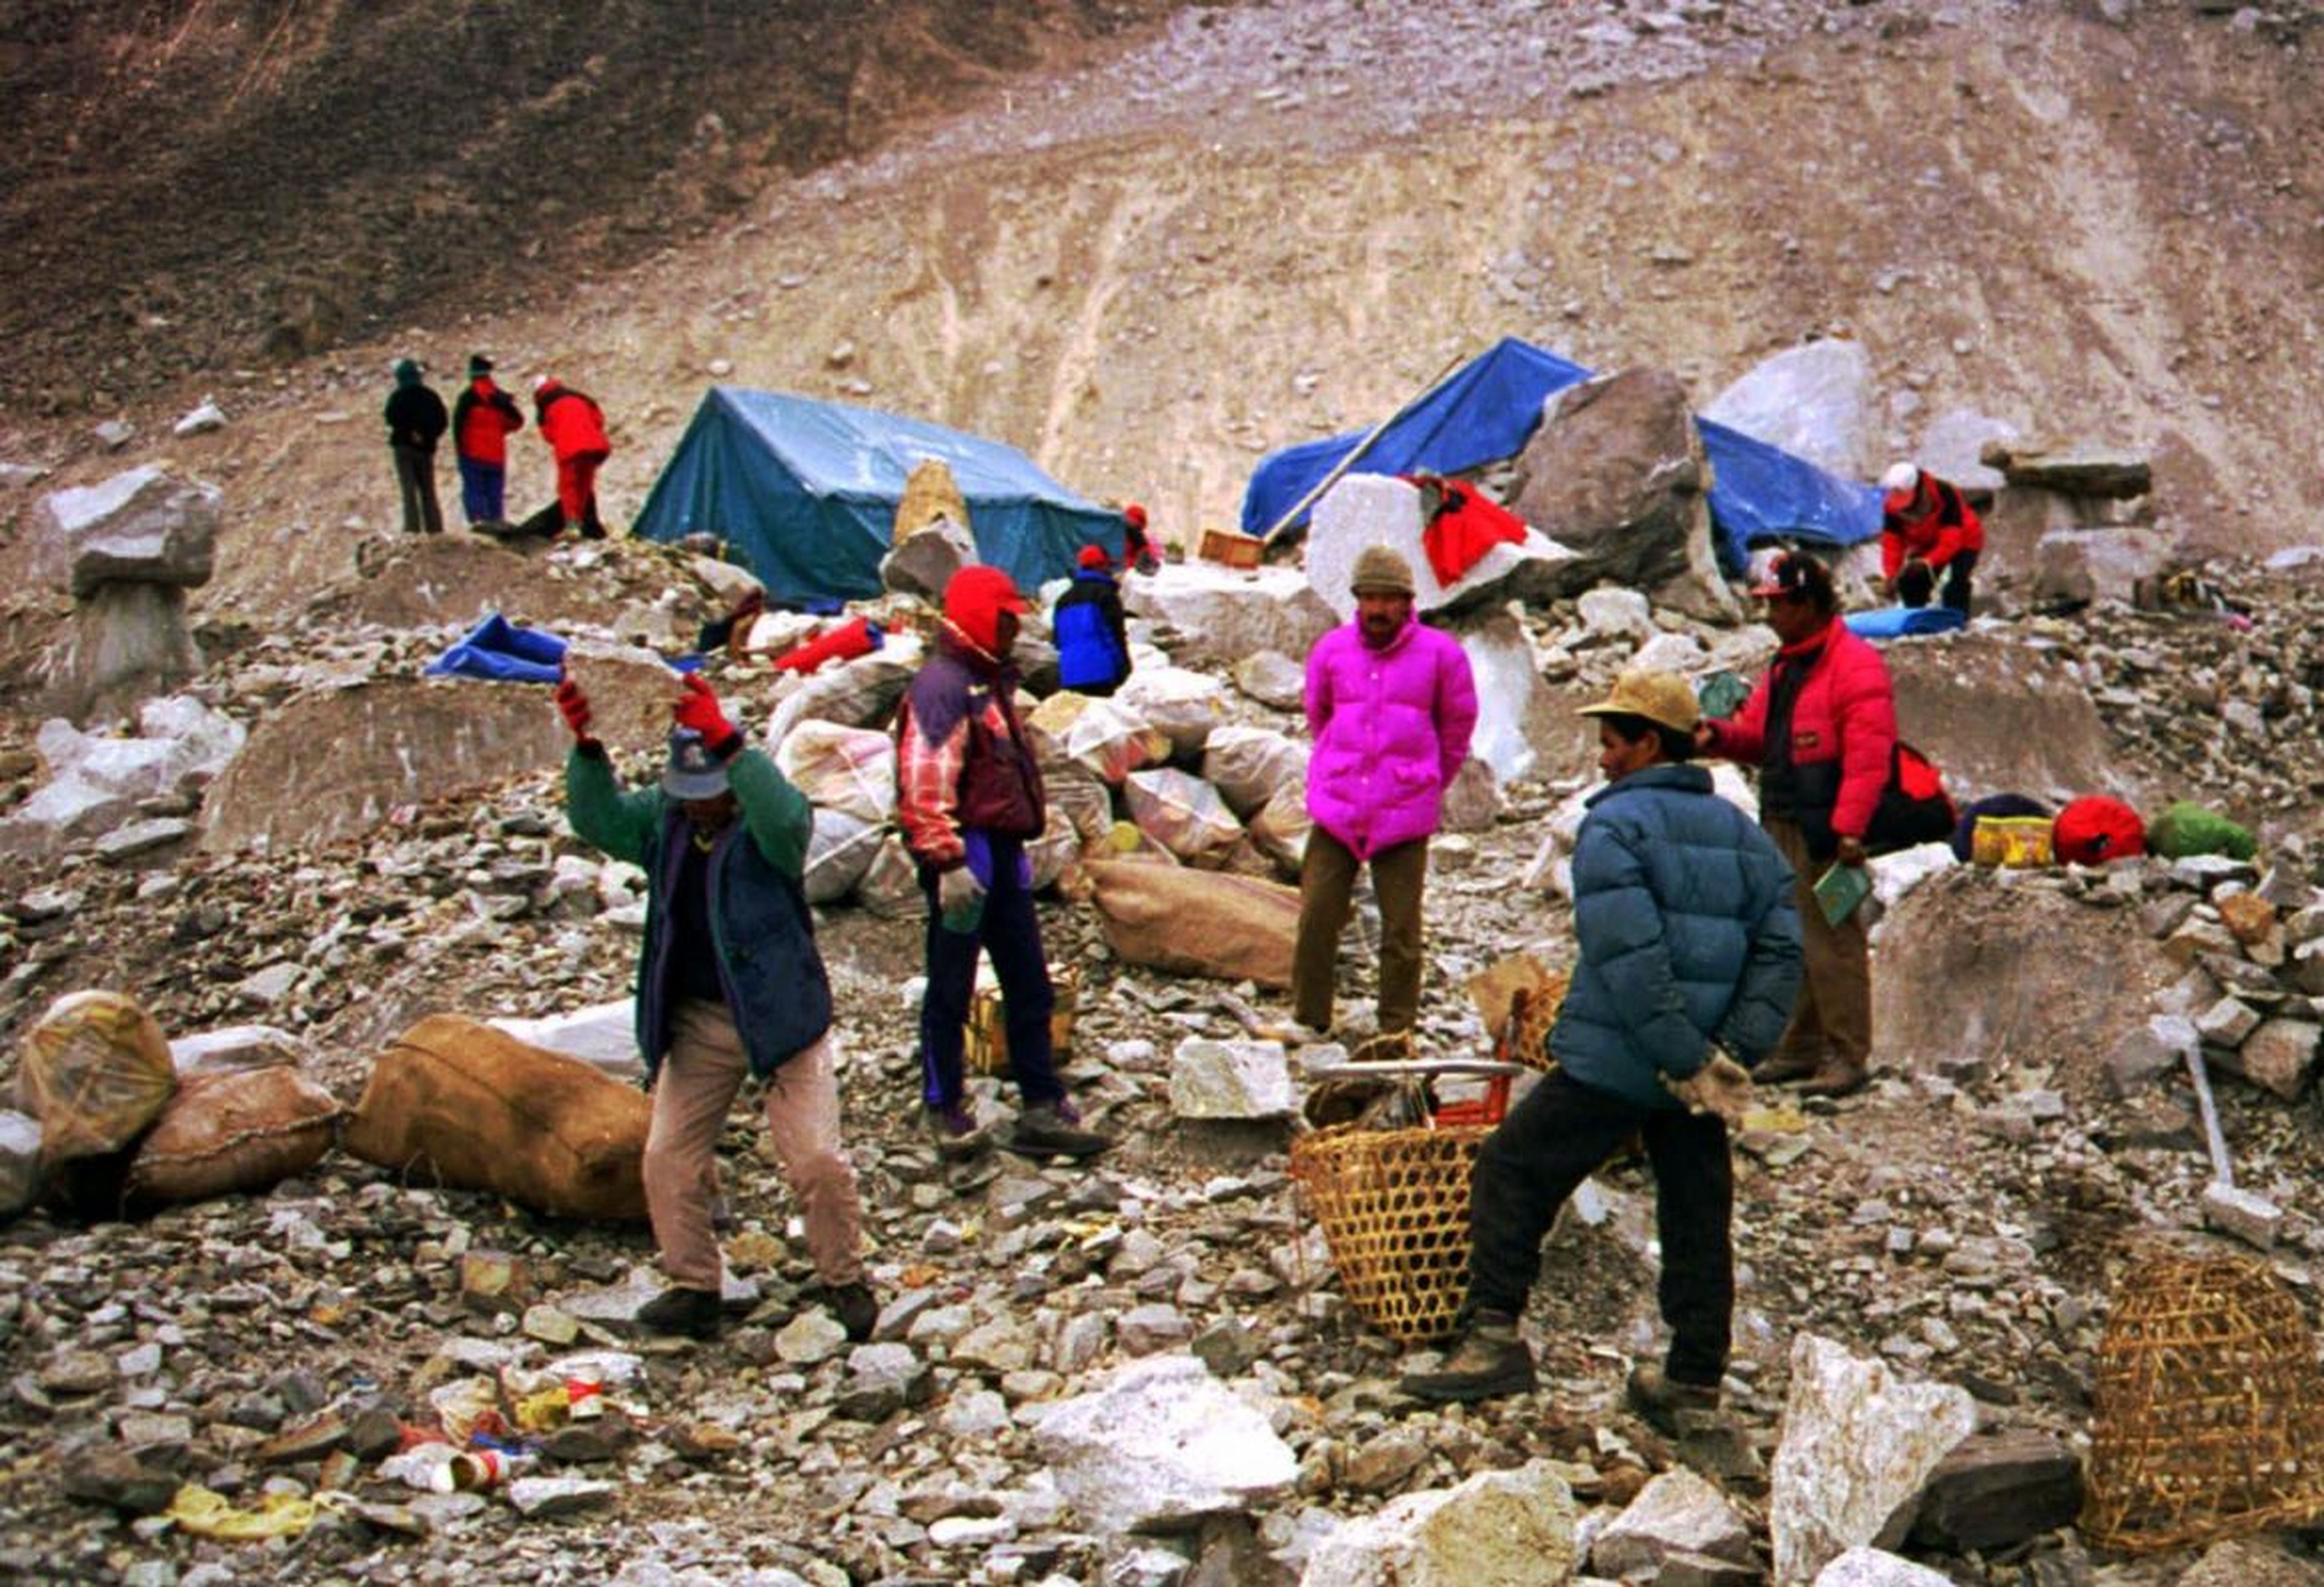 Una persona recicla latas de aluminio con una piedra en el campamento base del Everest antes de ponerlos en sacos para enviarlos a Katmandú. 18 de diciembre de 1998